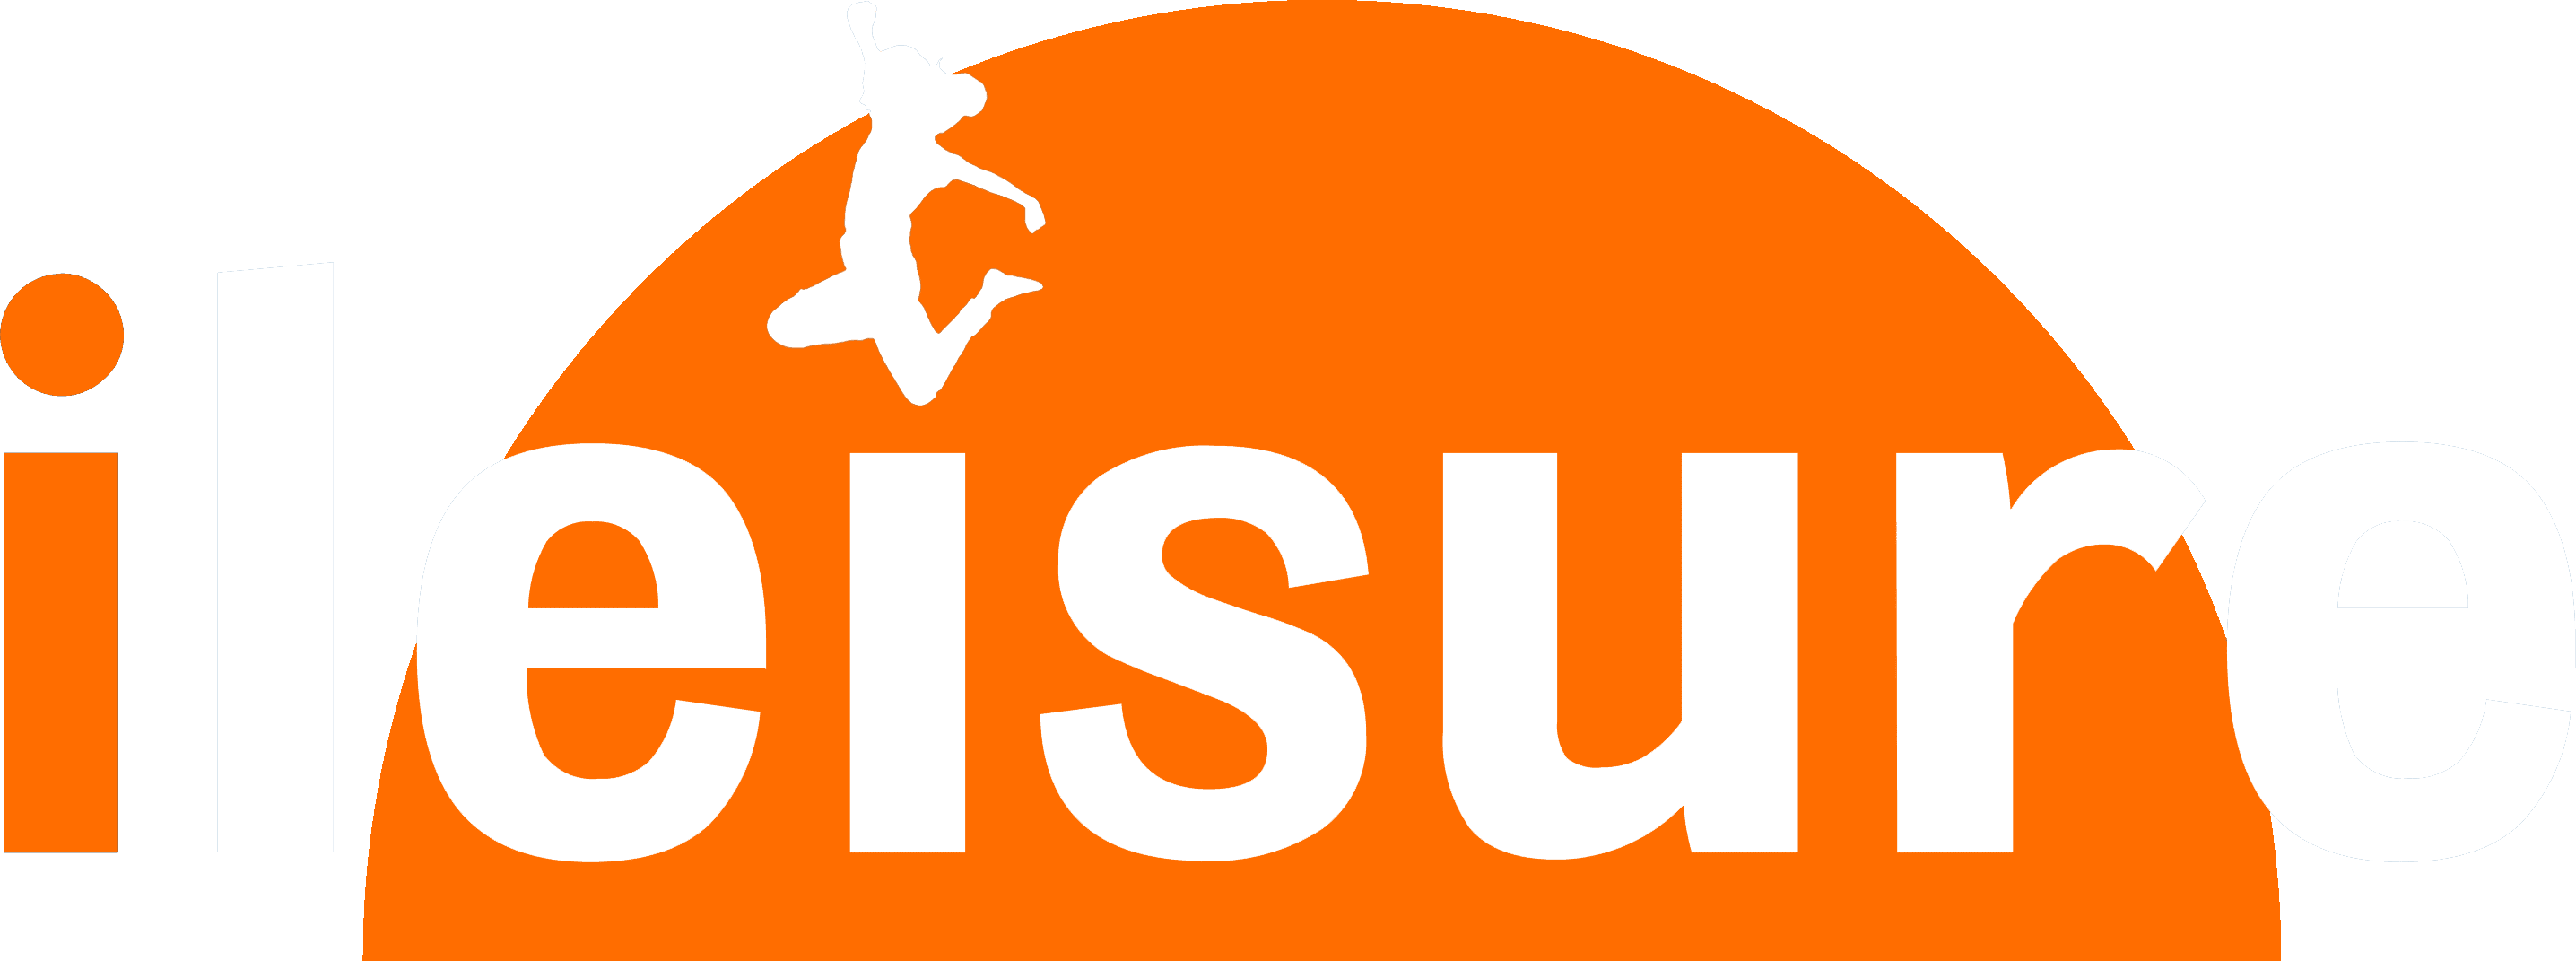 ileisure logo